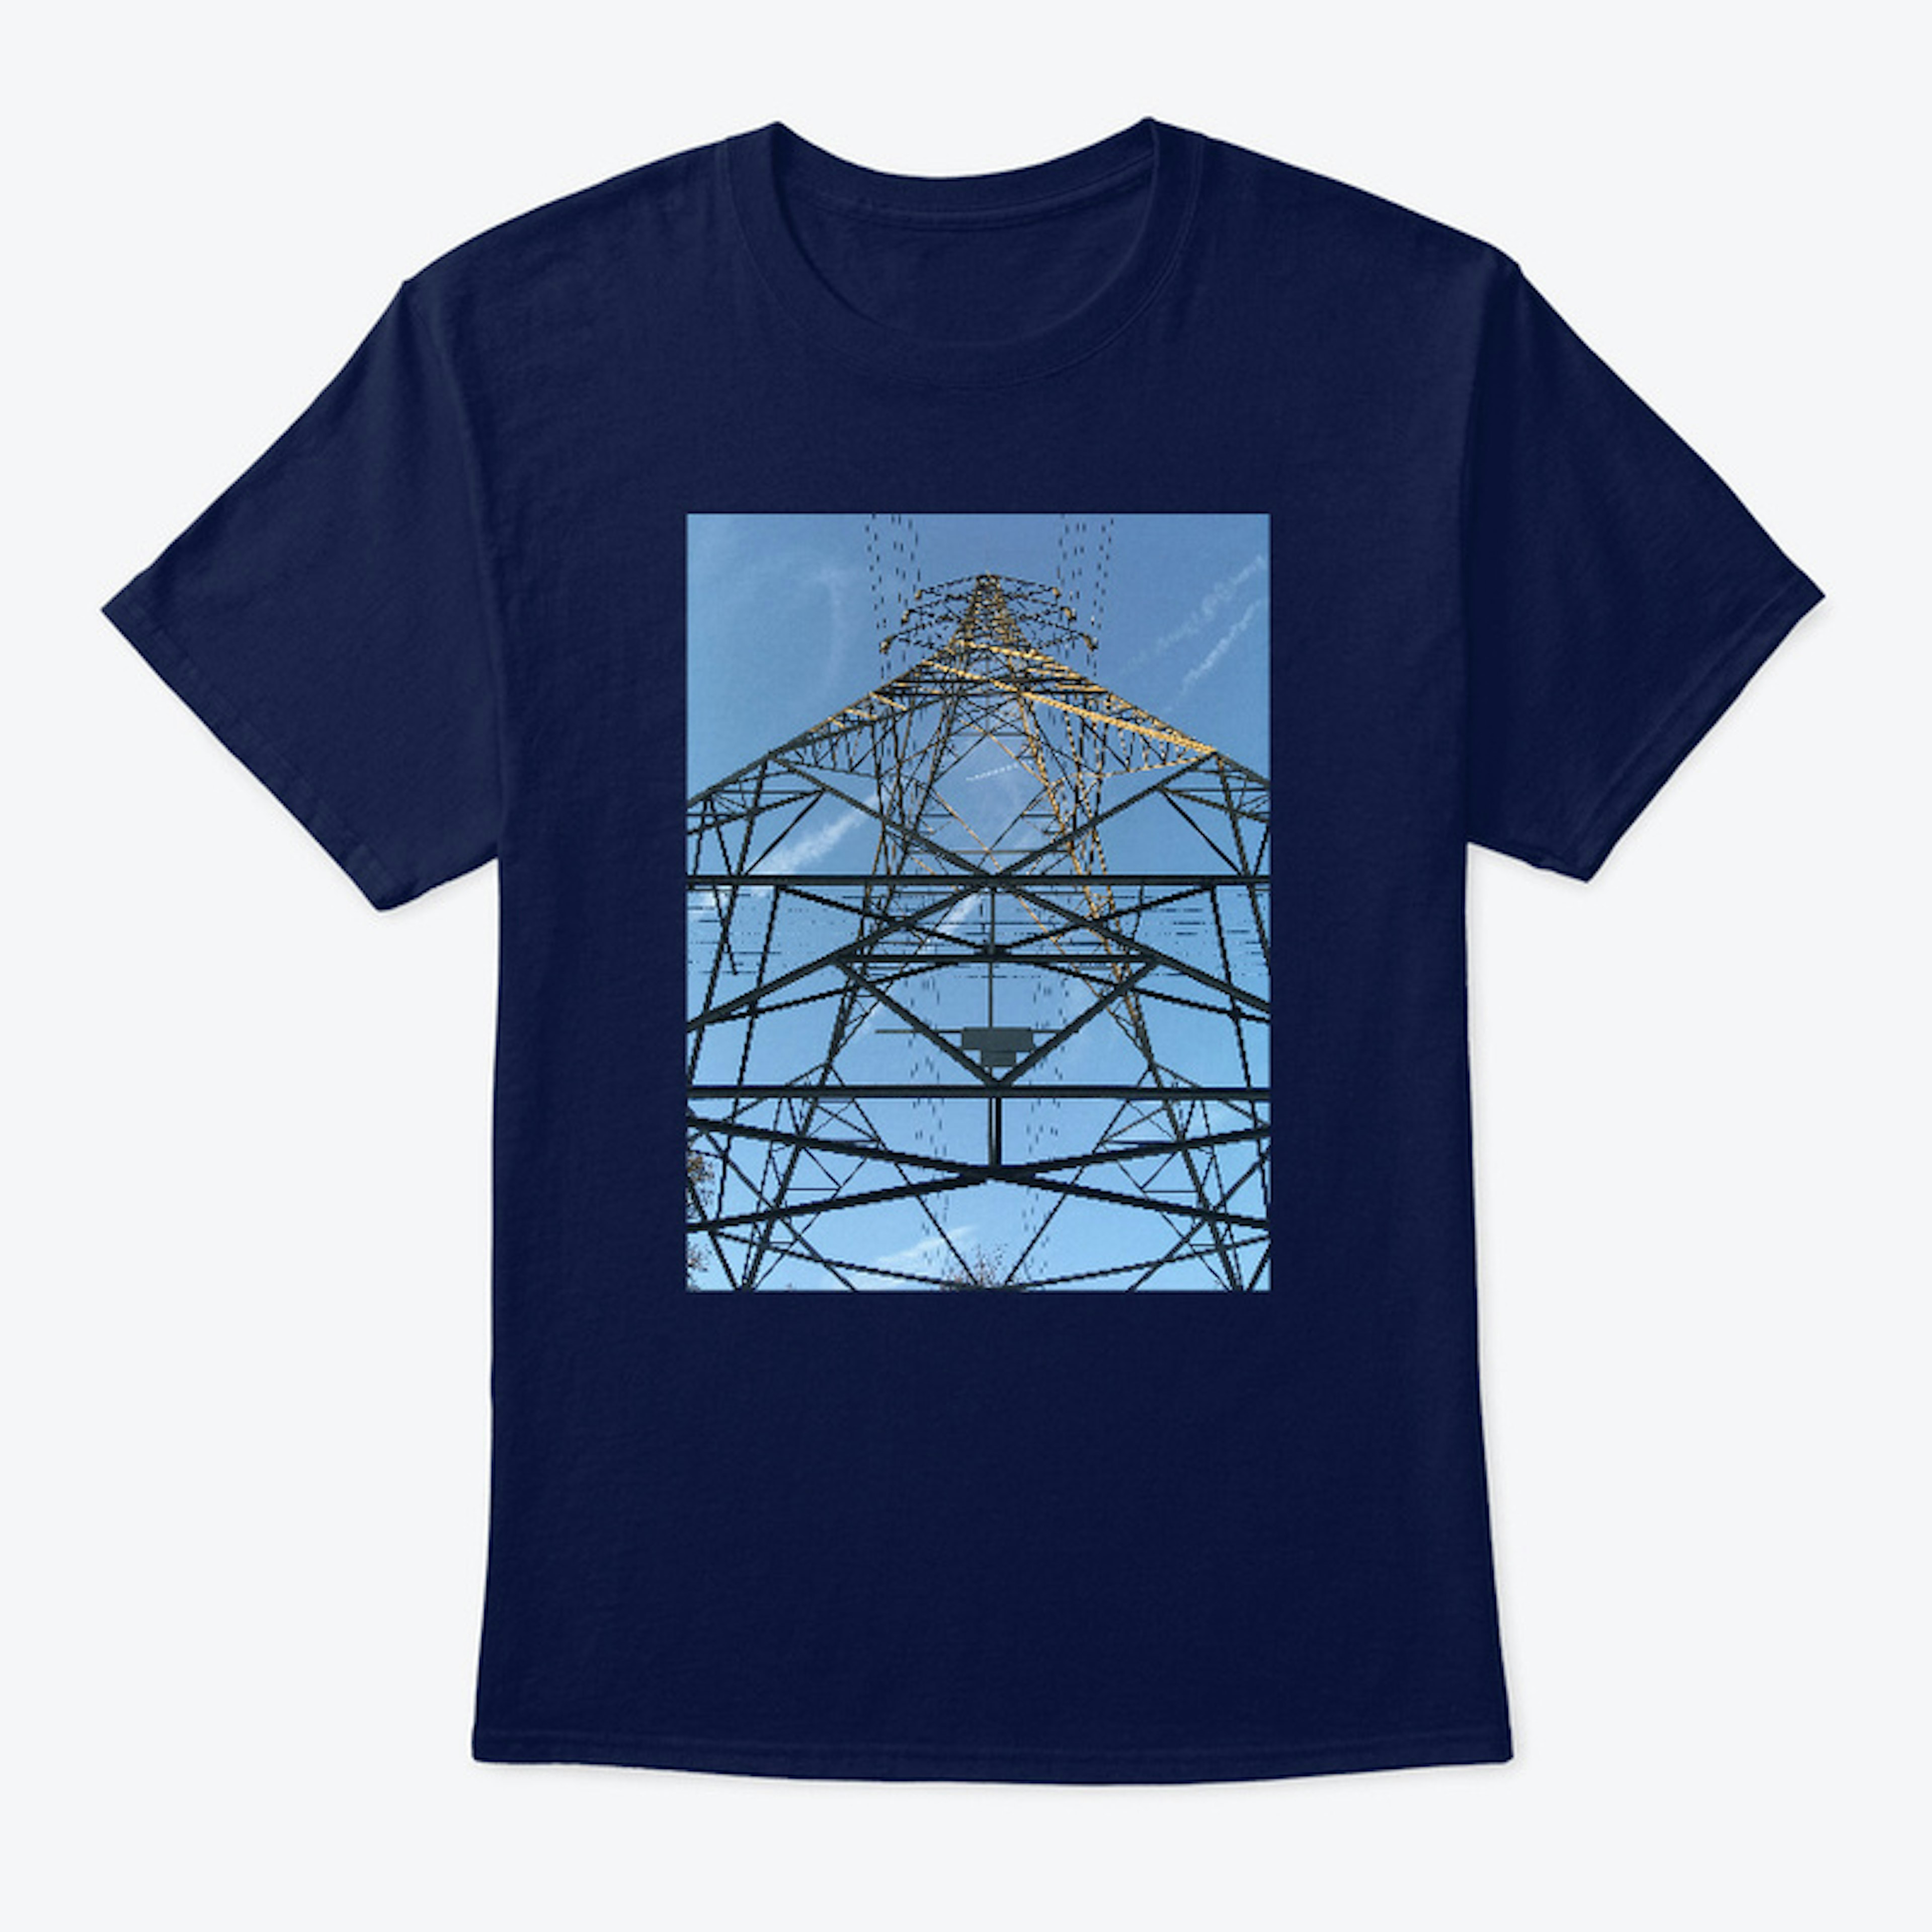 praise the pylon t-shirt